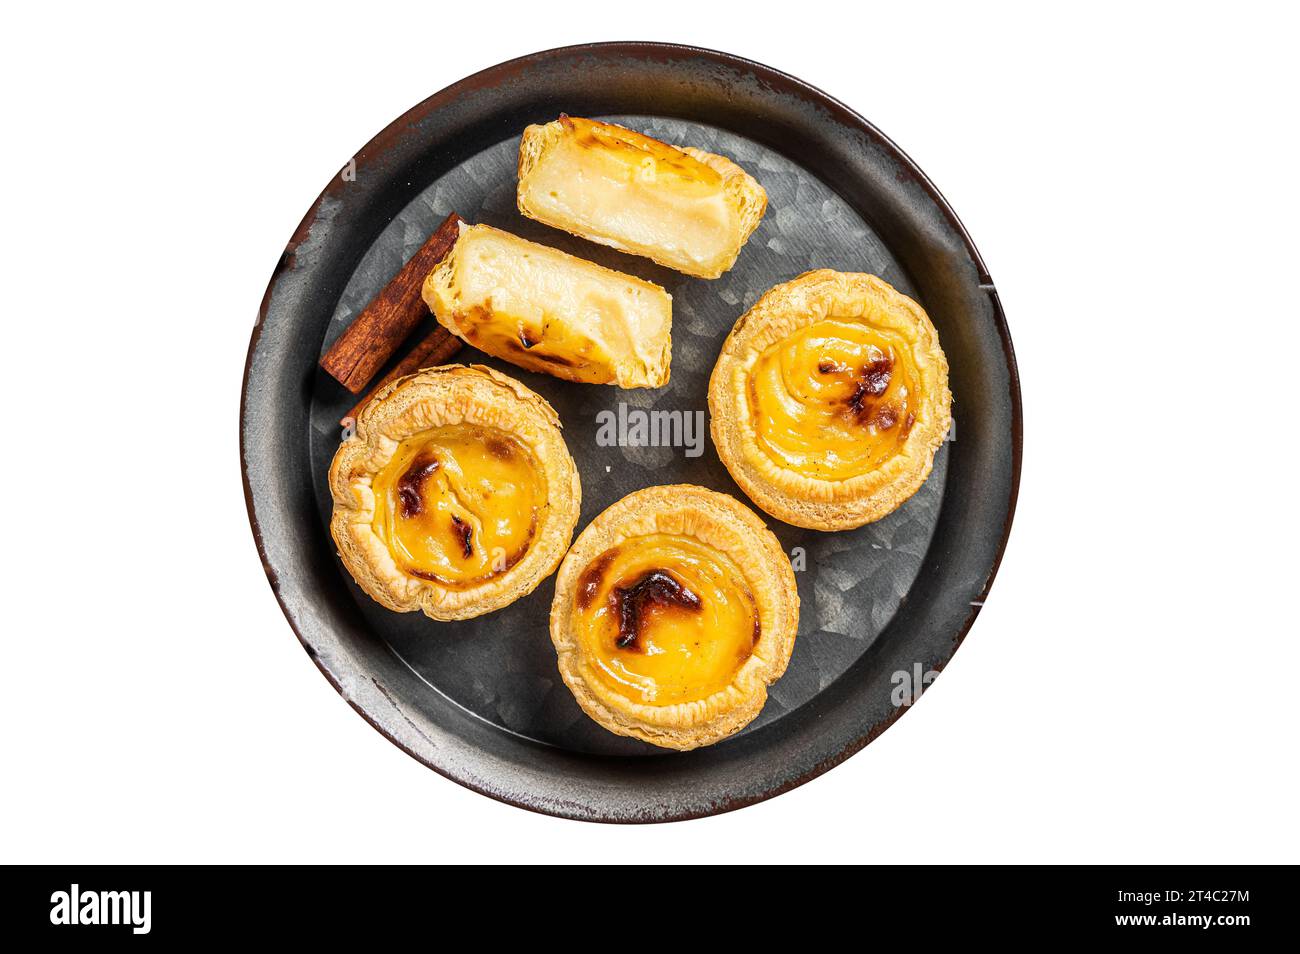 Pastell de nata traditionelle portugiesische Pudding-Tarte. Isoliert auf weißem Hintergrund Stockfoto